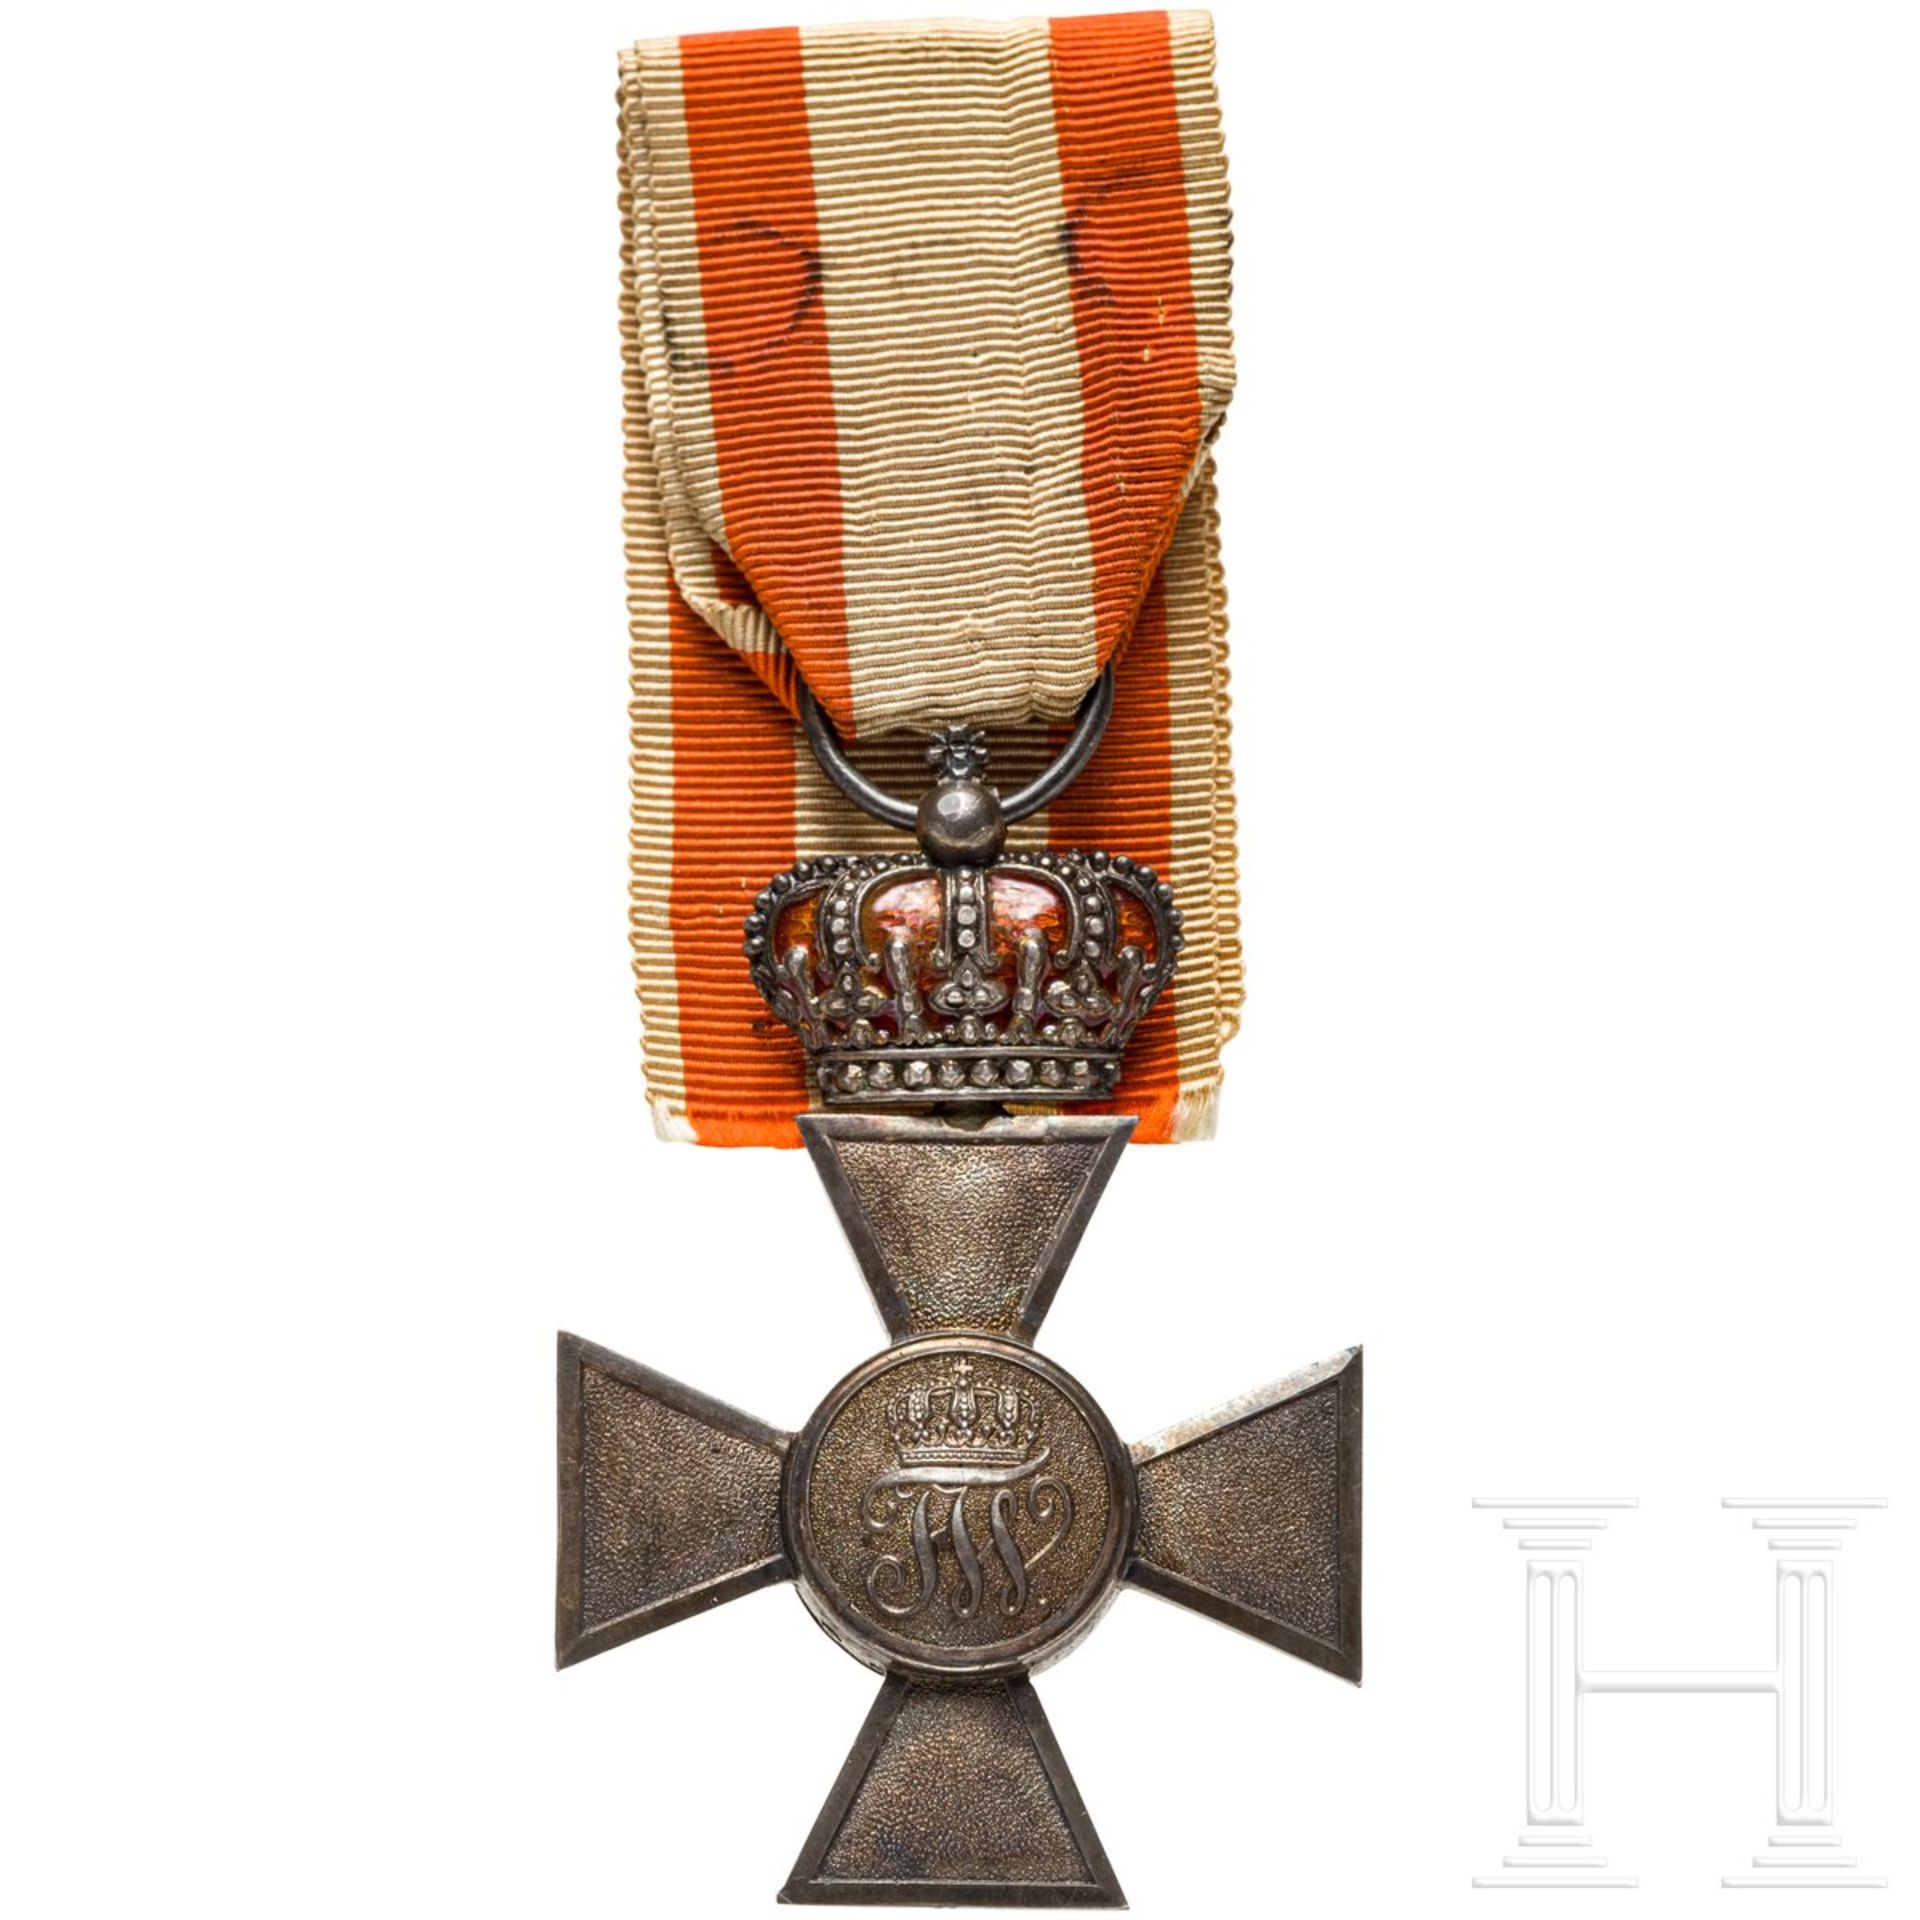 Roter Adler-Orden 4. Klasse mit der königlichen Krone, Urkunde - Bild 3 aus 3